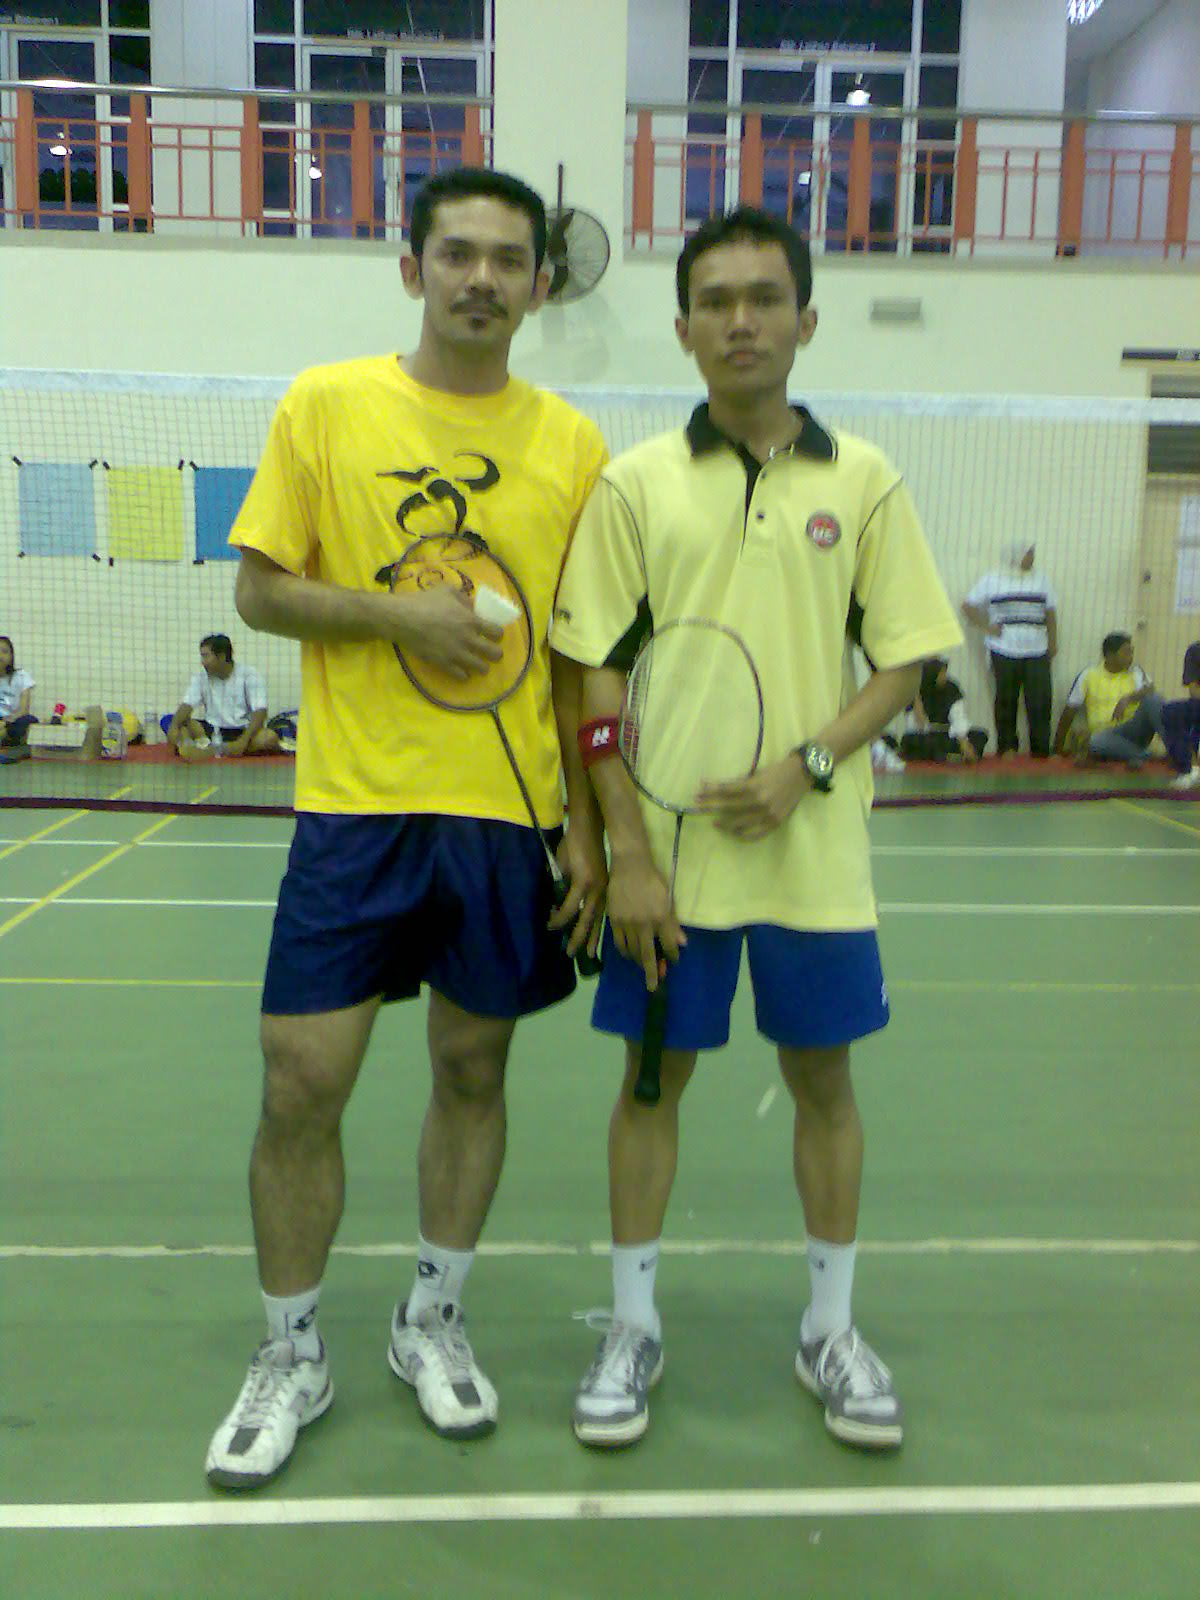 Kejohanan Badminton Campuran Berpasukan(L & W), Karnival Sukan Staf UPSI Ke-3 2008